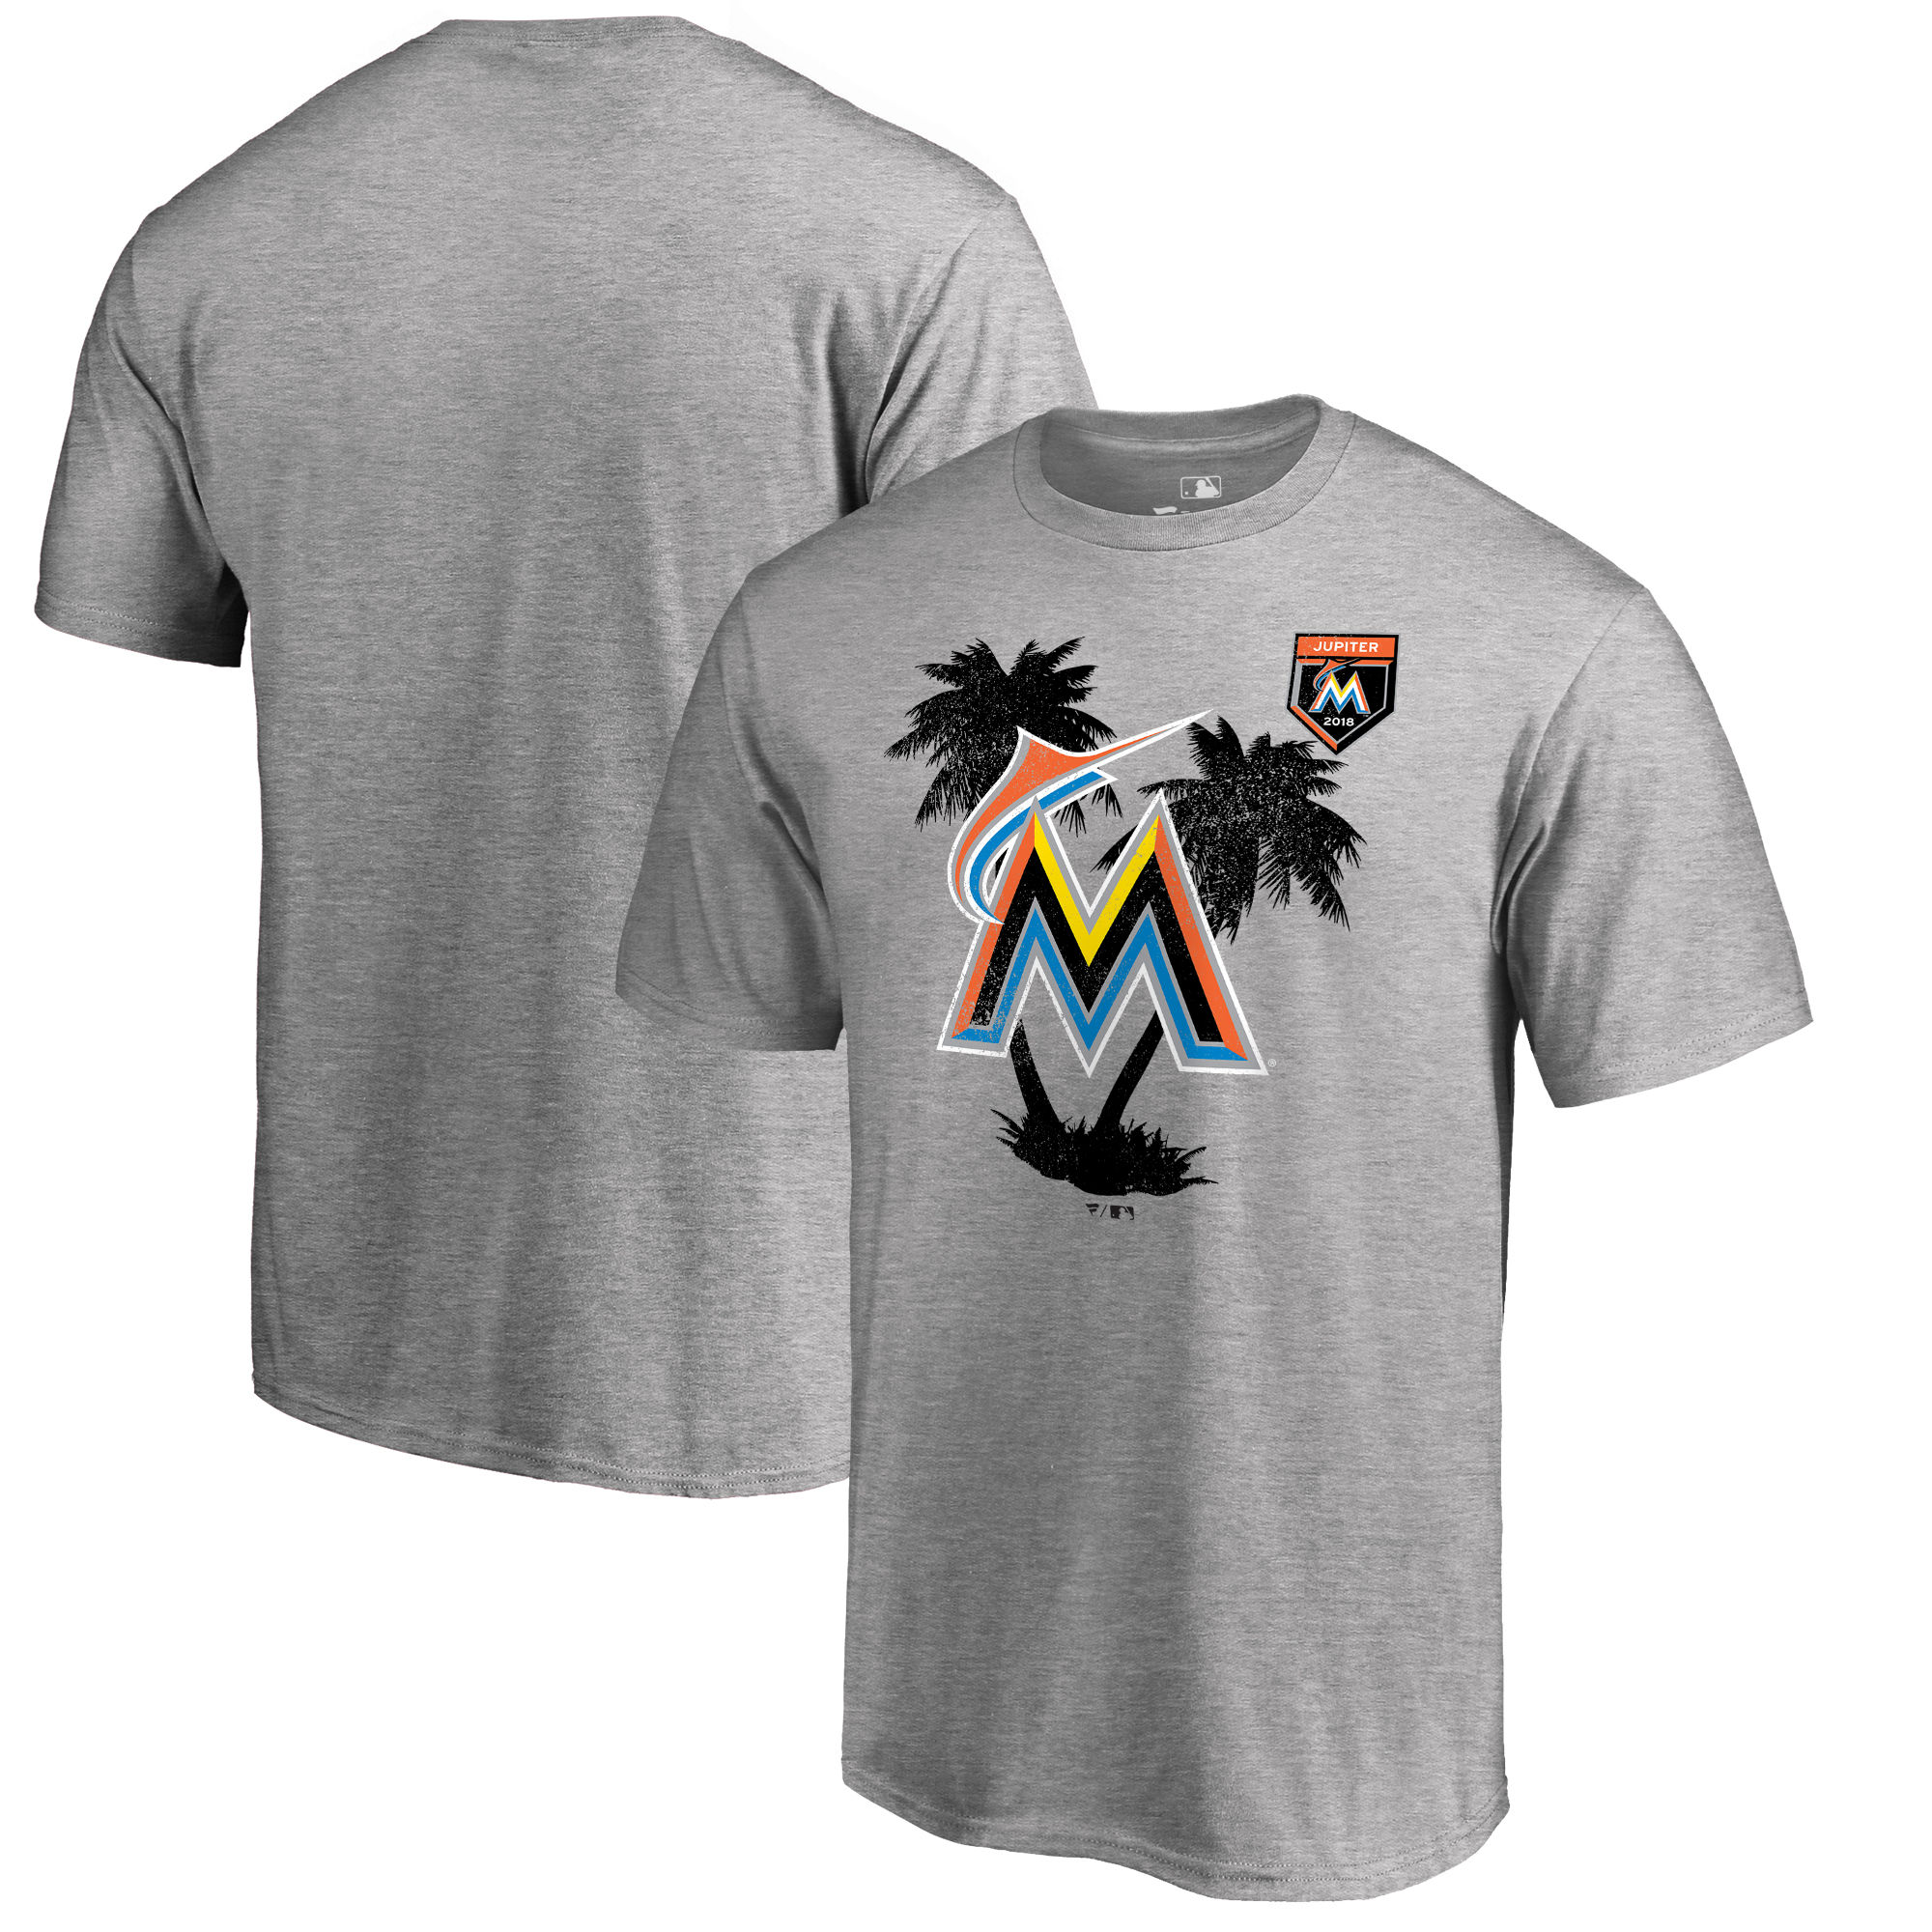 New Miami Marlins Fanatics Branded 2018 MLB Spring Training Vintage T